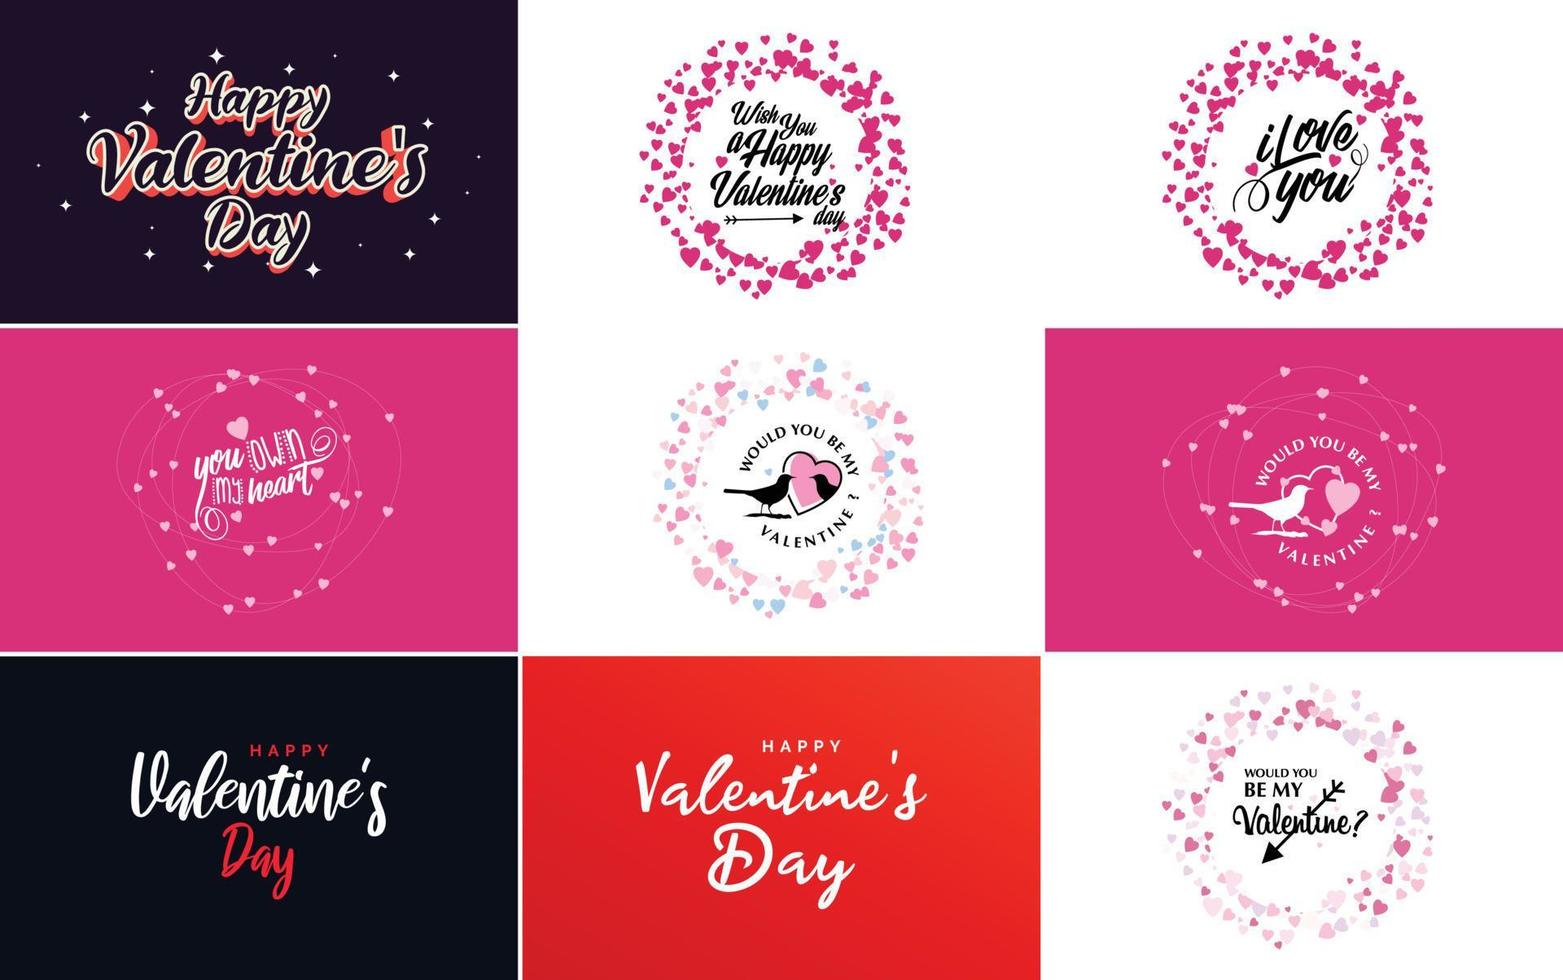 Fröhliche Valentinstag-Grußkartenvorlage mit einem niedlichen Tierthema und einem rosa Farbschema vektor